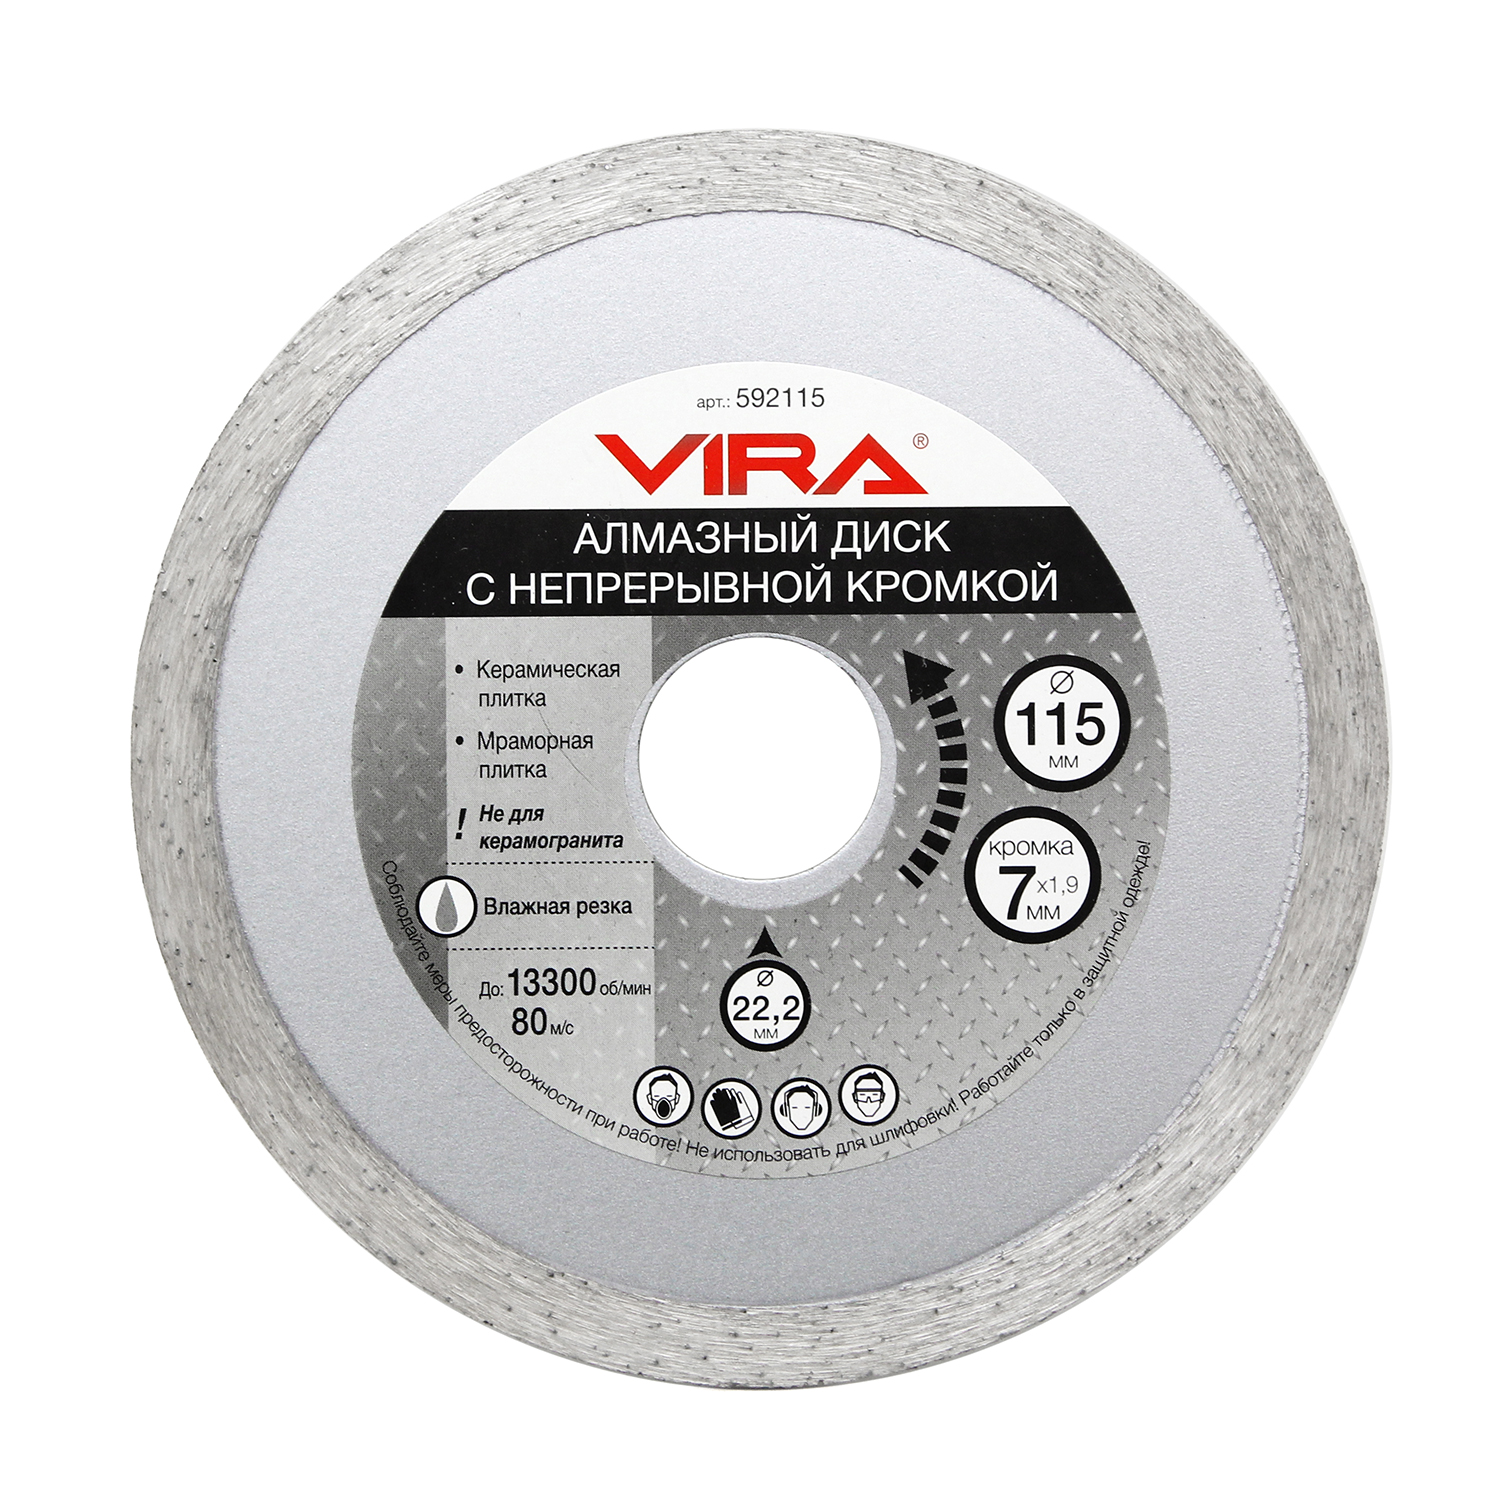 Диск алмазный VIRA с непрерывной кромкой, наружный диаметр круга 115 мм.